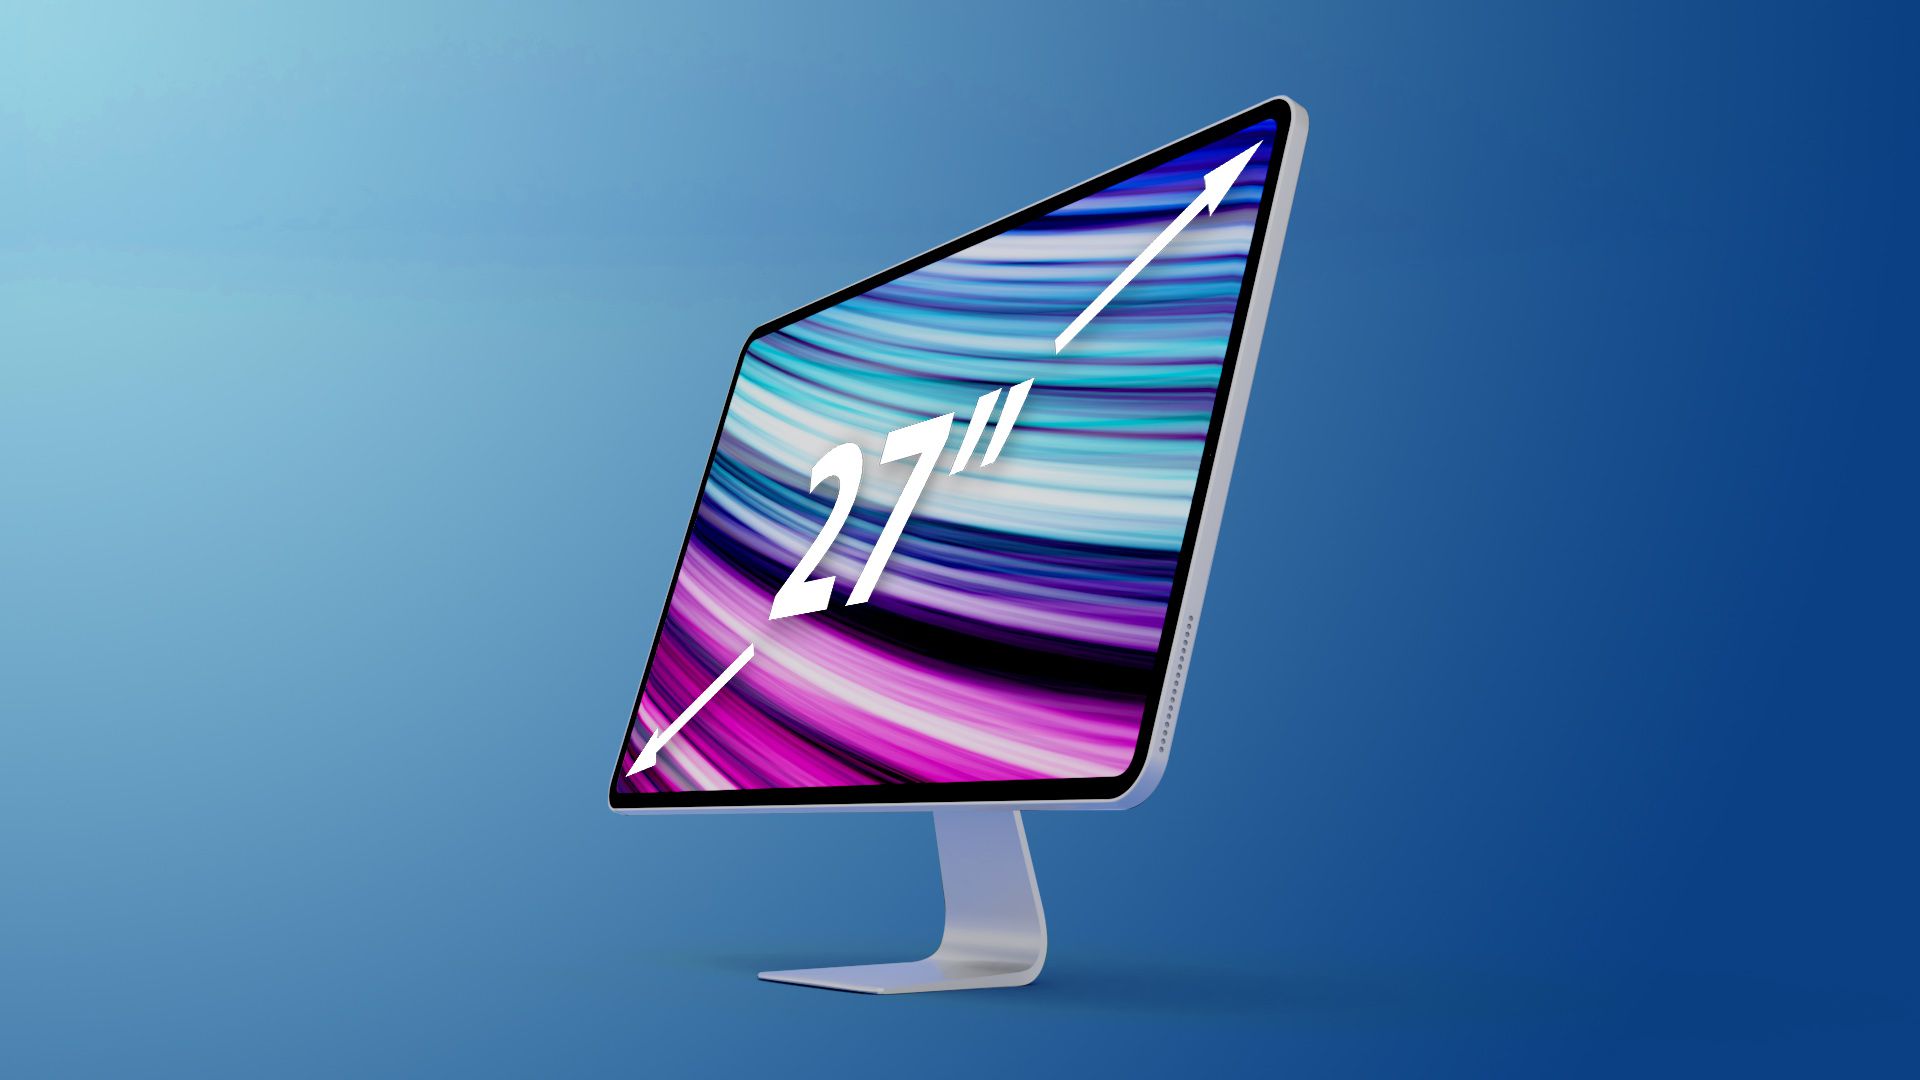 Filtrado: En 2022, Apple lanzará un iMac Pro de 27 pulgadas con chips M1 Pro/Max, pantalla Mini-LED y un precio superior a los 2000 dólares